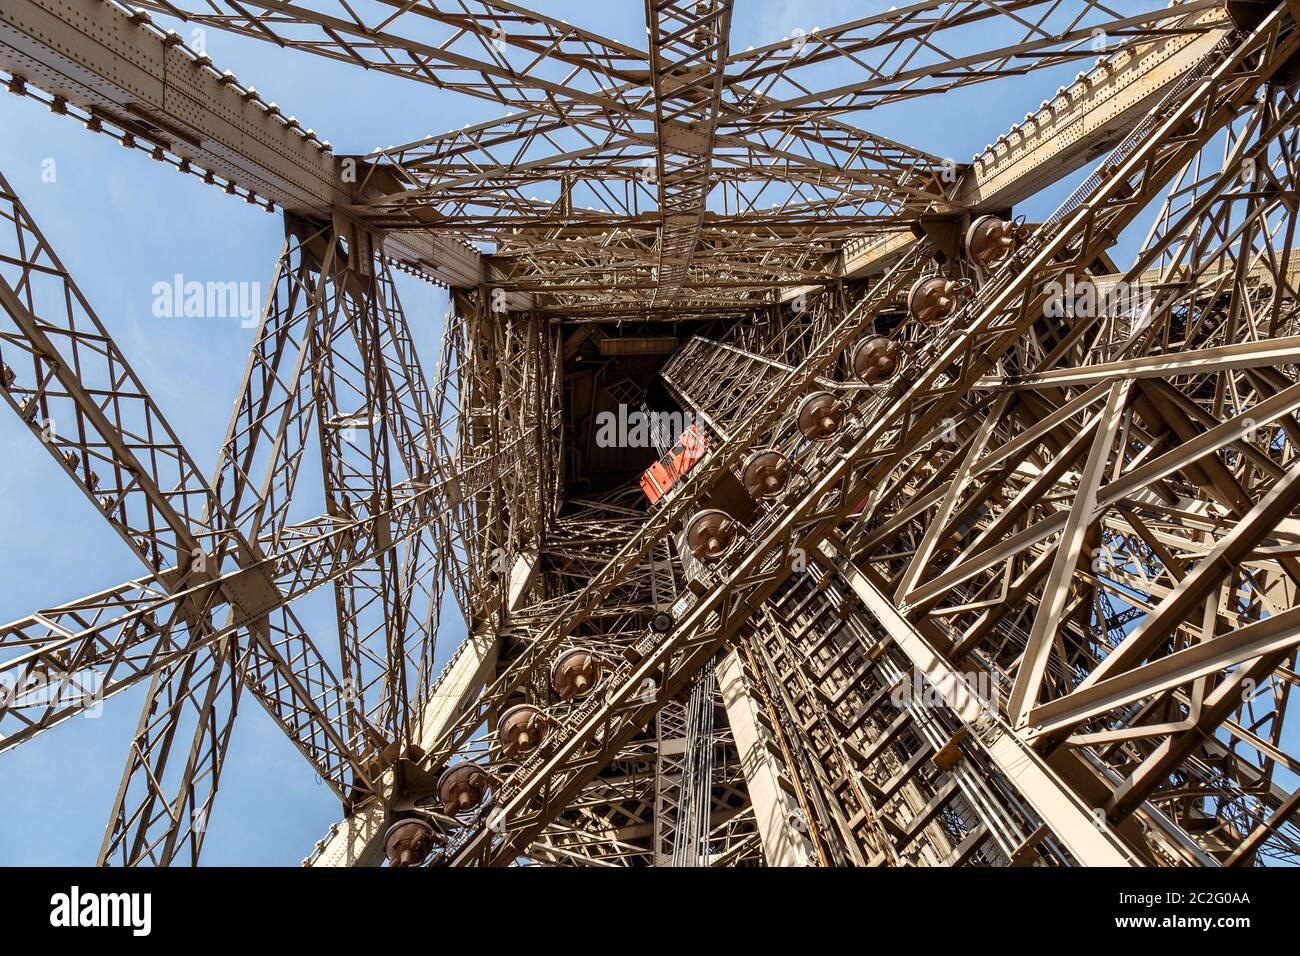 París, Francia, 30 de marzo de 2017: Dentro de la Torre Eiffel en París, Francia. Vista al interior de la Torre Eiffel. Gran buil simétrico Foto de stock